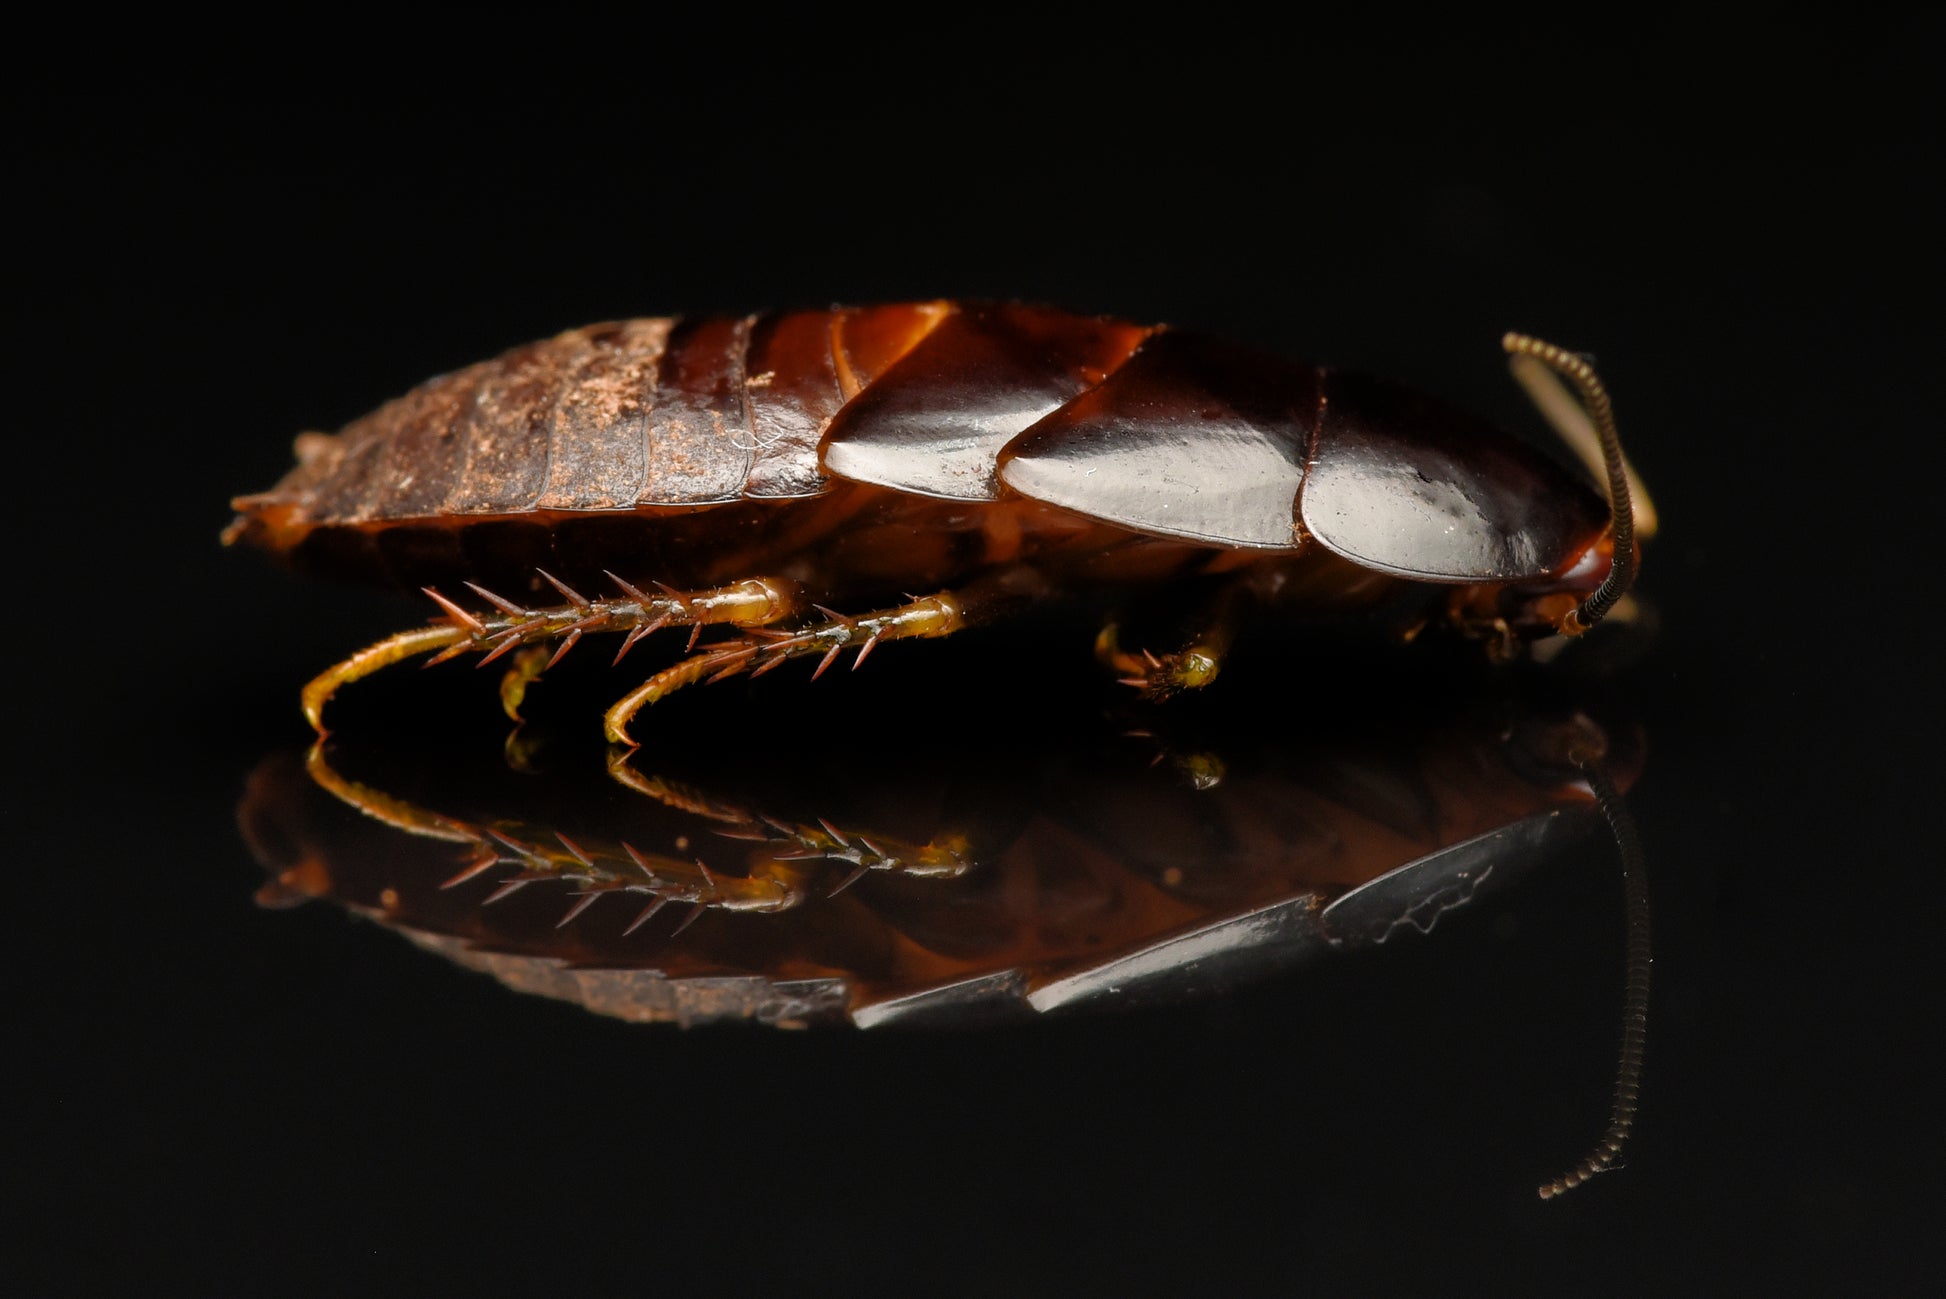 Den brune og mørke nymfe af Banankakerlak (Panchlora nivea)